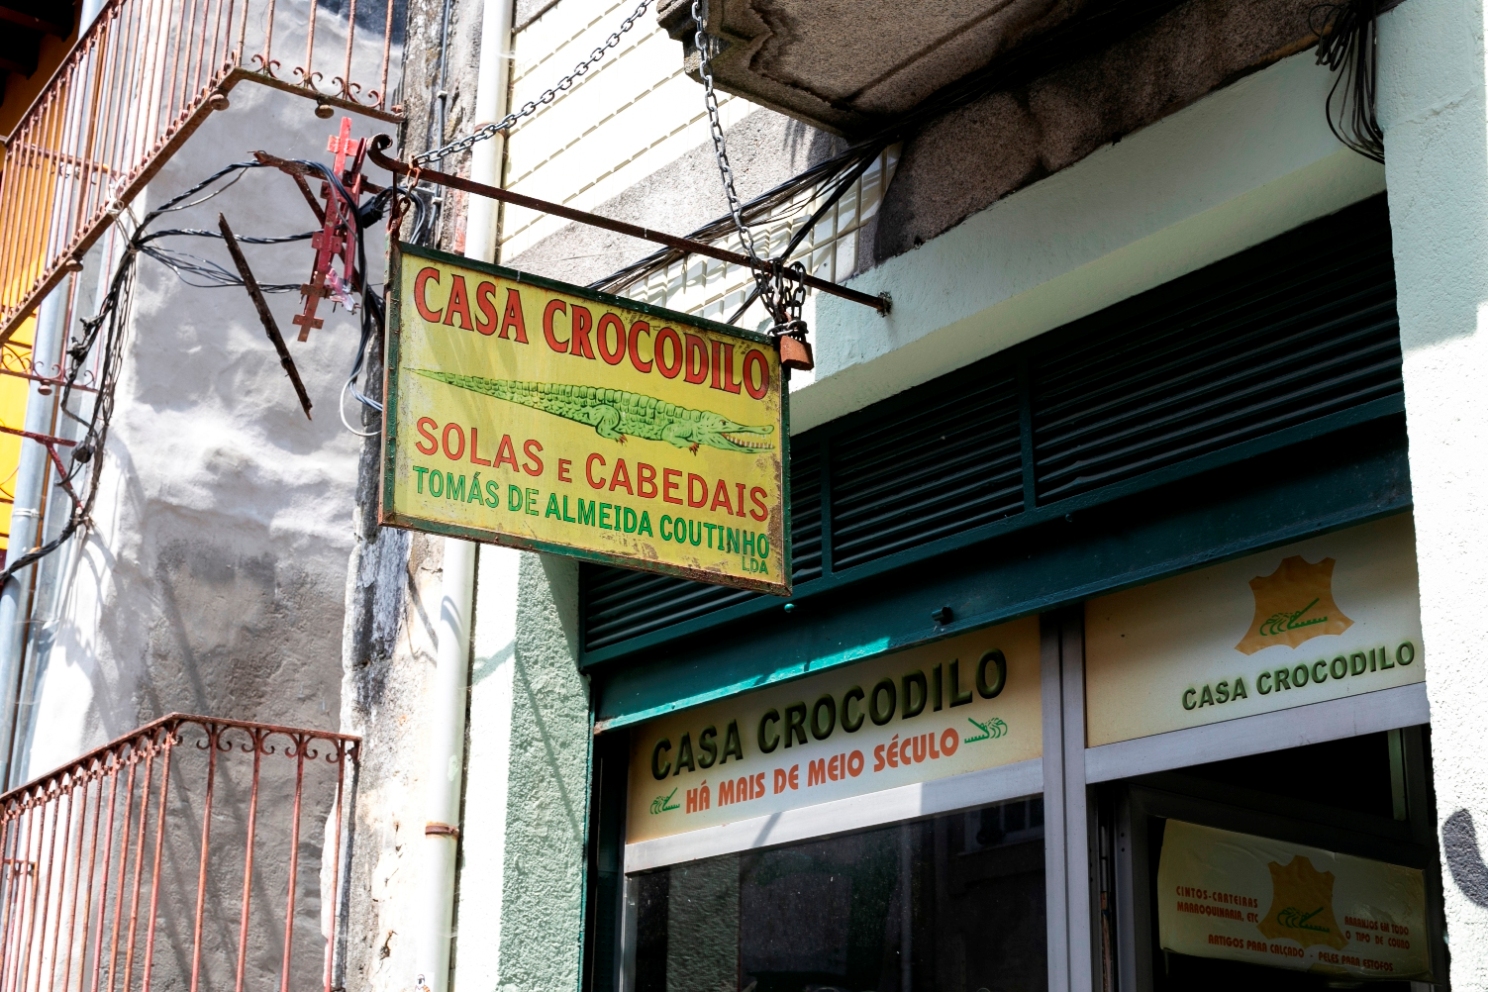 Casa Crocodilo - Shops